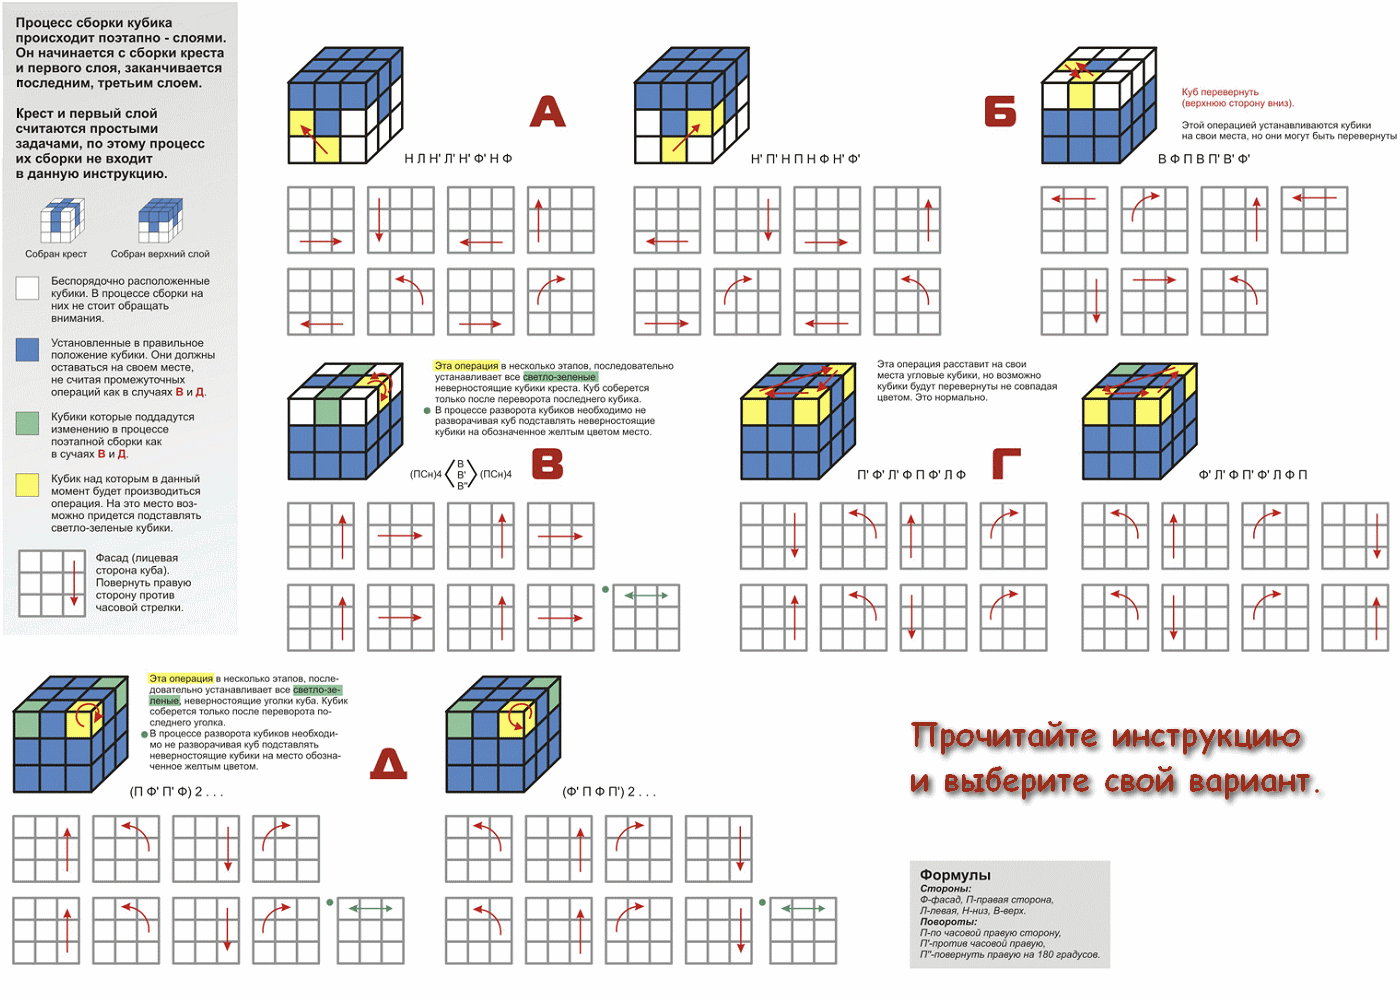 Сборка кубика 3 слой. Схема кубика Рубика 3х3. Схема сборки кубика Рубика 3х3. Схема сборки кубика Рубика 3х3 третий слой. Схемы кубика Рубика 3х3 для чайников.